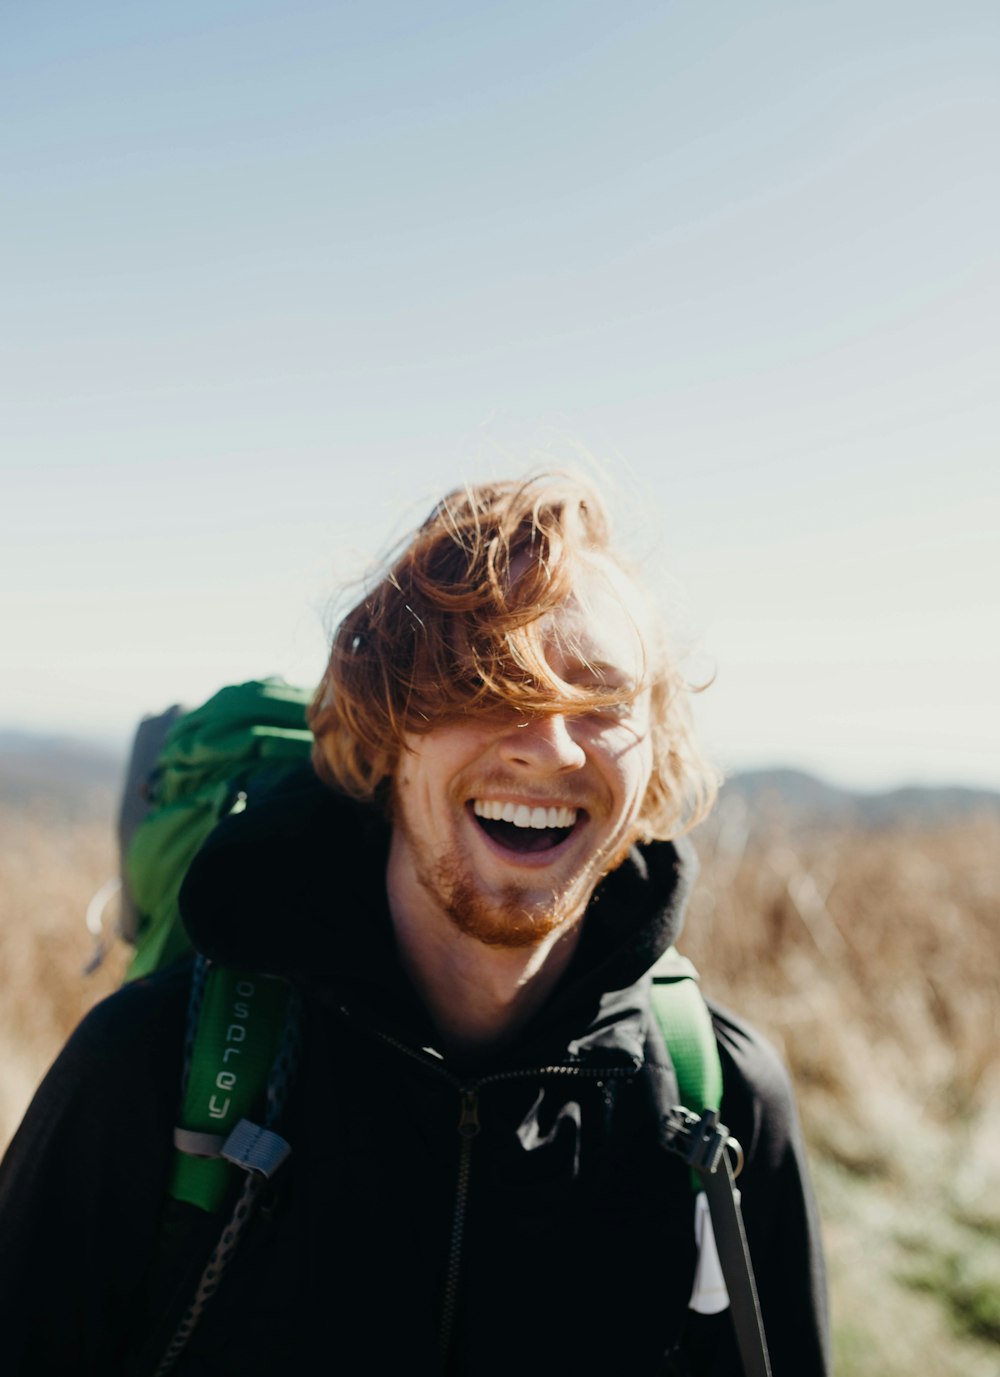 Lächelnder Mann mit grüner Bergsteigertasche während des Tages